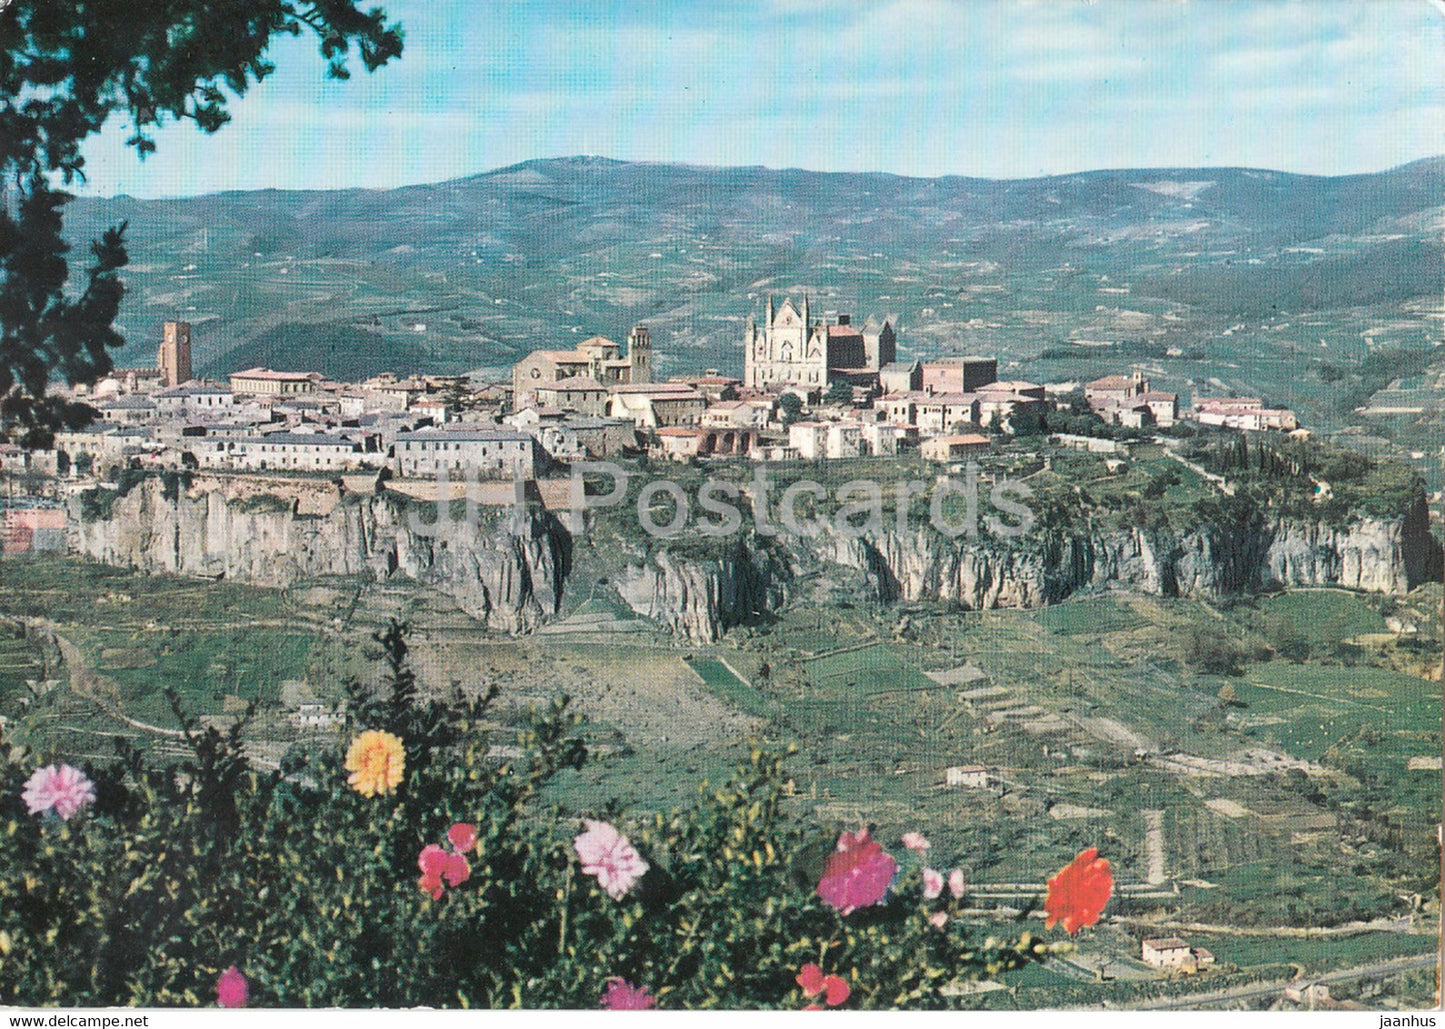 Orvieto - panorama - 46277 - Italy - unused - JH Postcards